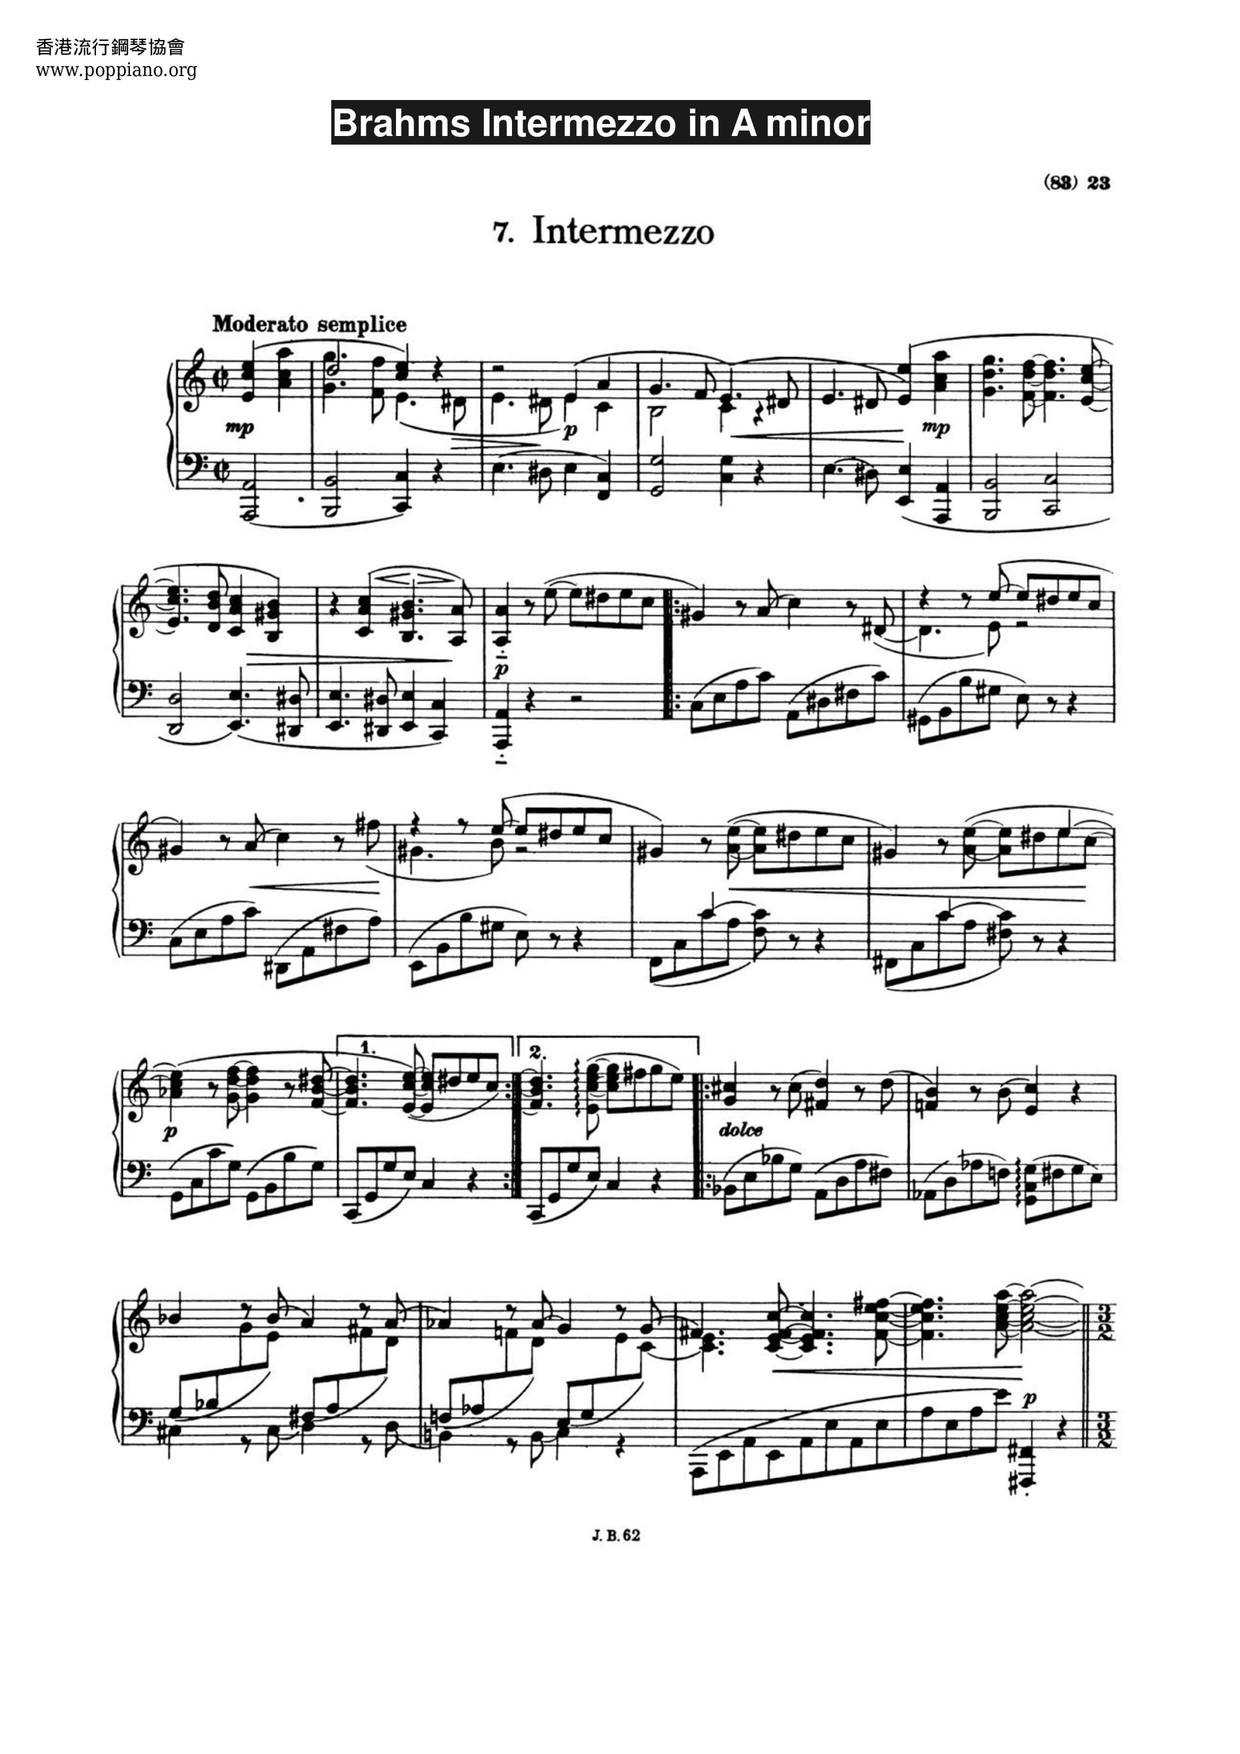 Intermezzo In A Minor Score